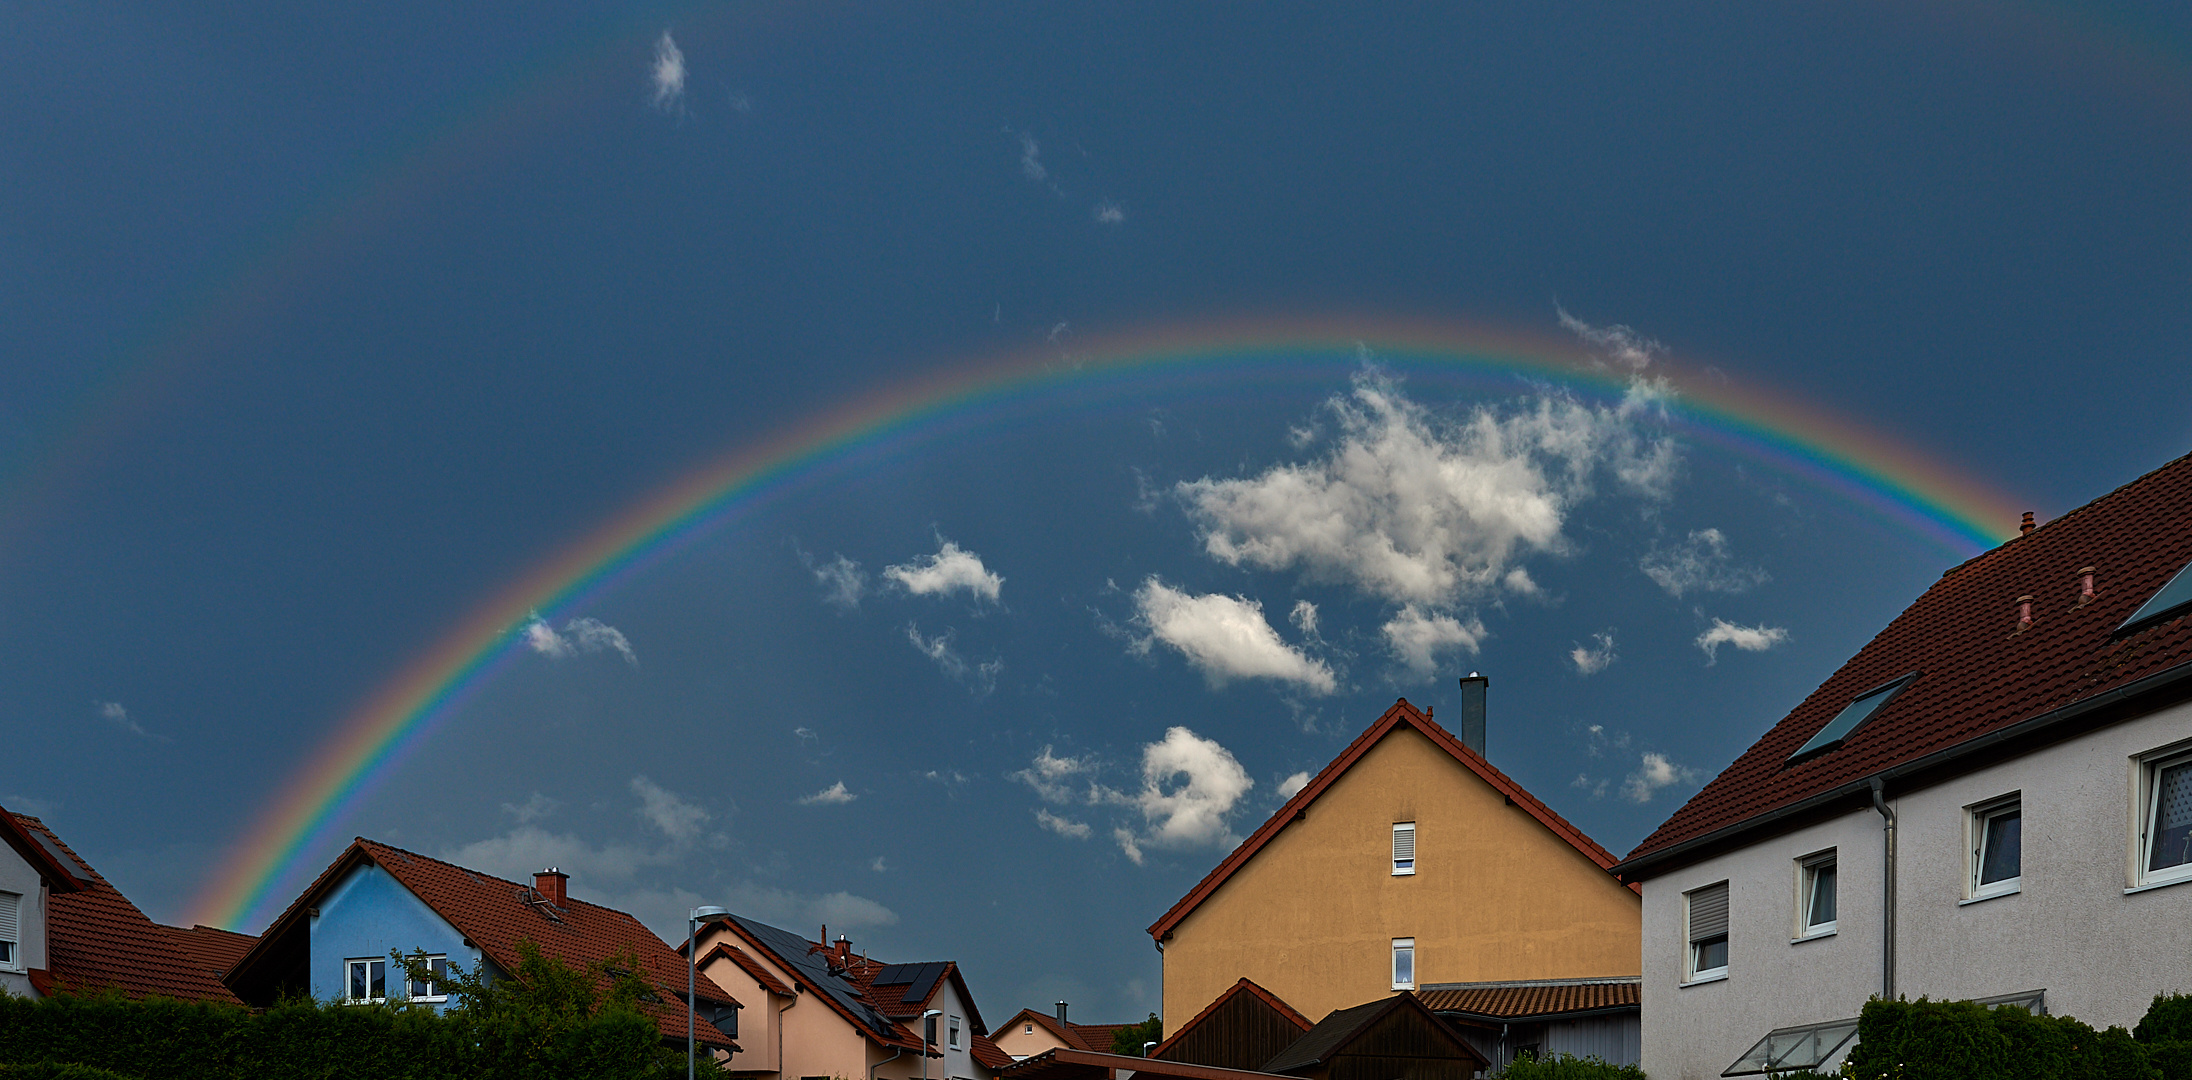 Sauber den Bogen gespannt, Regenbogen über meinem Wohngebiet. 